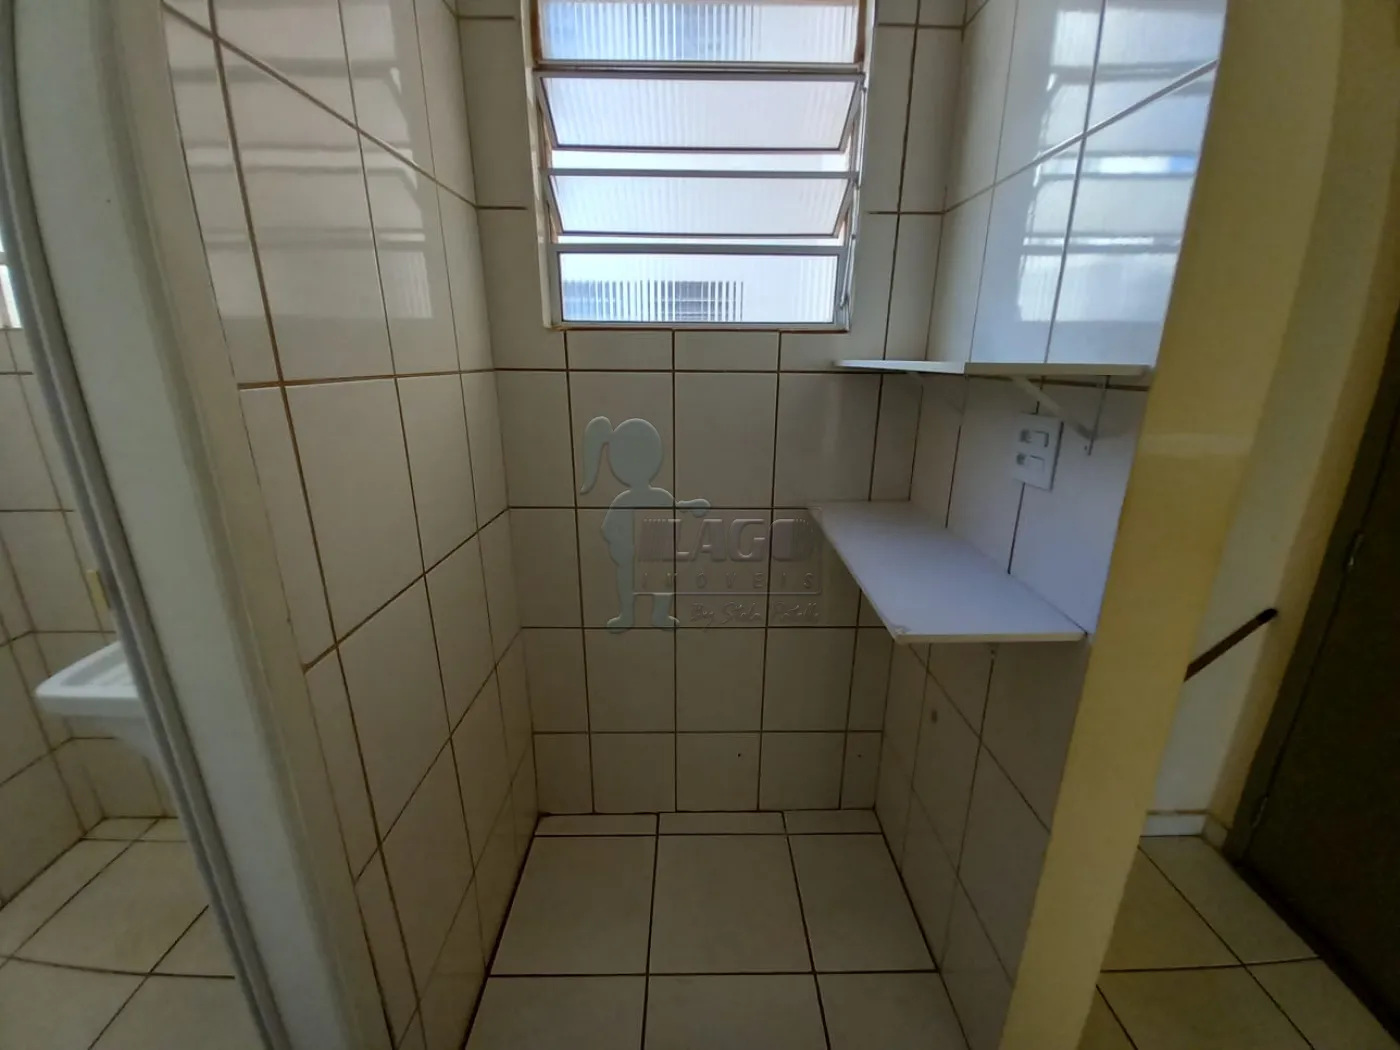 Alugar Apartamento / Kitnet em Ribeirão Preto R$ 800,00 - Foto 4